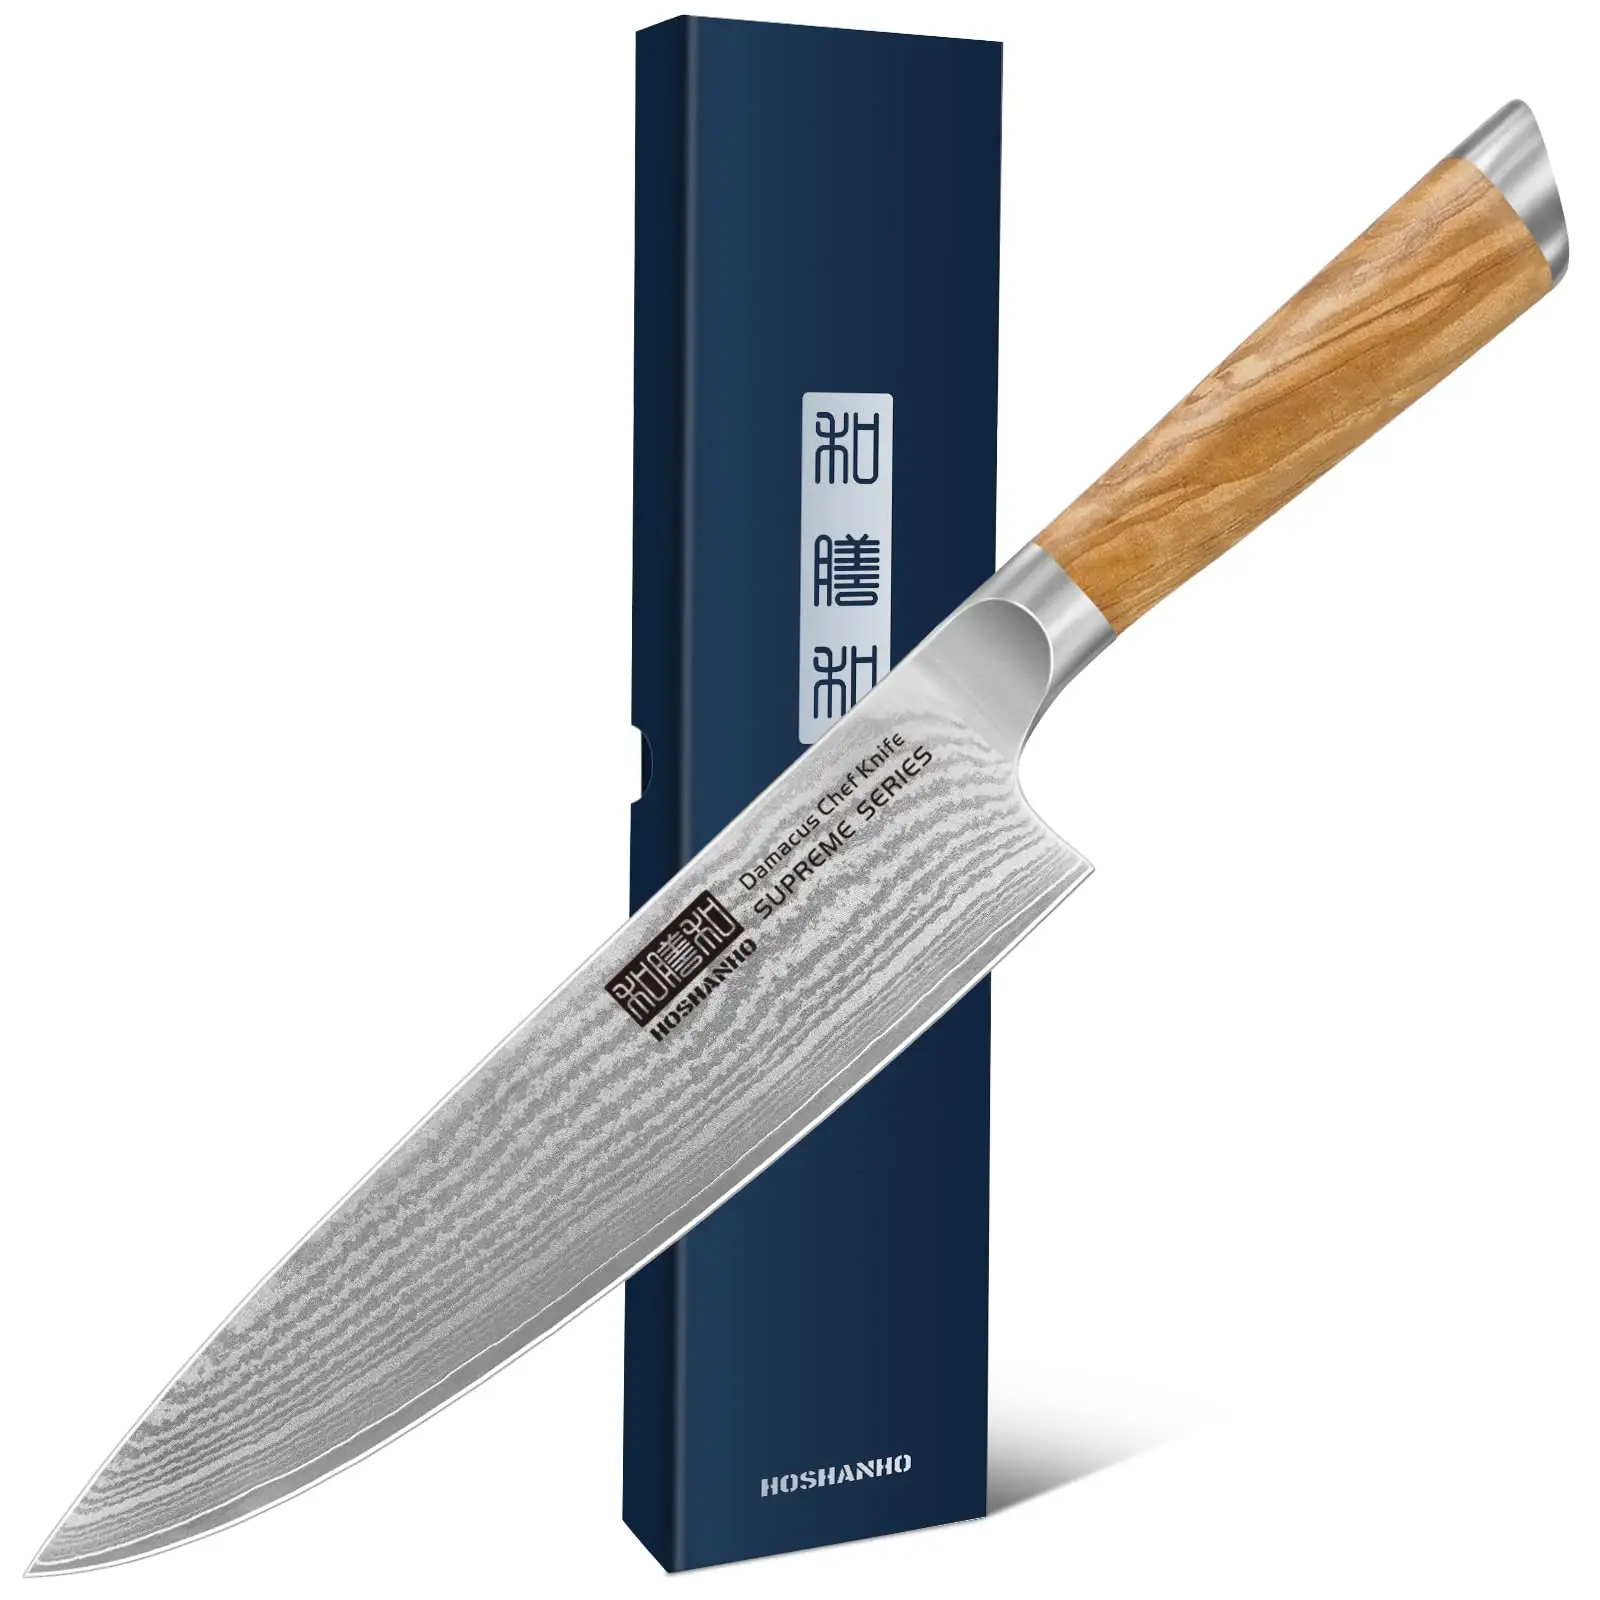 HOSHANHO-Cuchillo de cocina profesional súper Acero, cuchillo japonés ultra afilado con Mango ergonómico de madera de olivo, 67 capas,